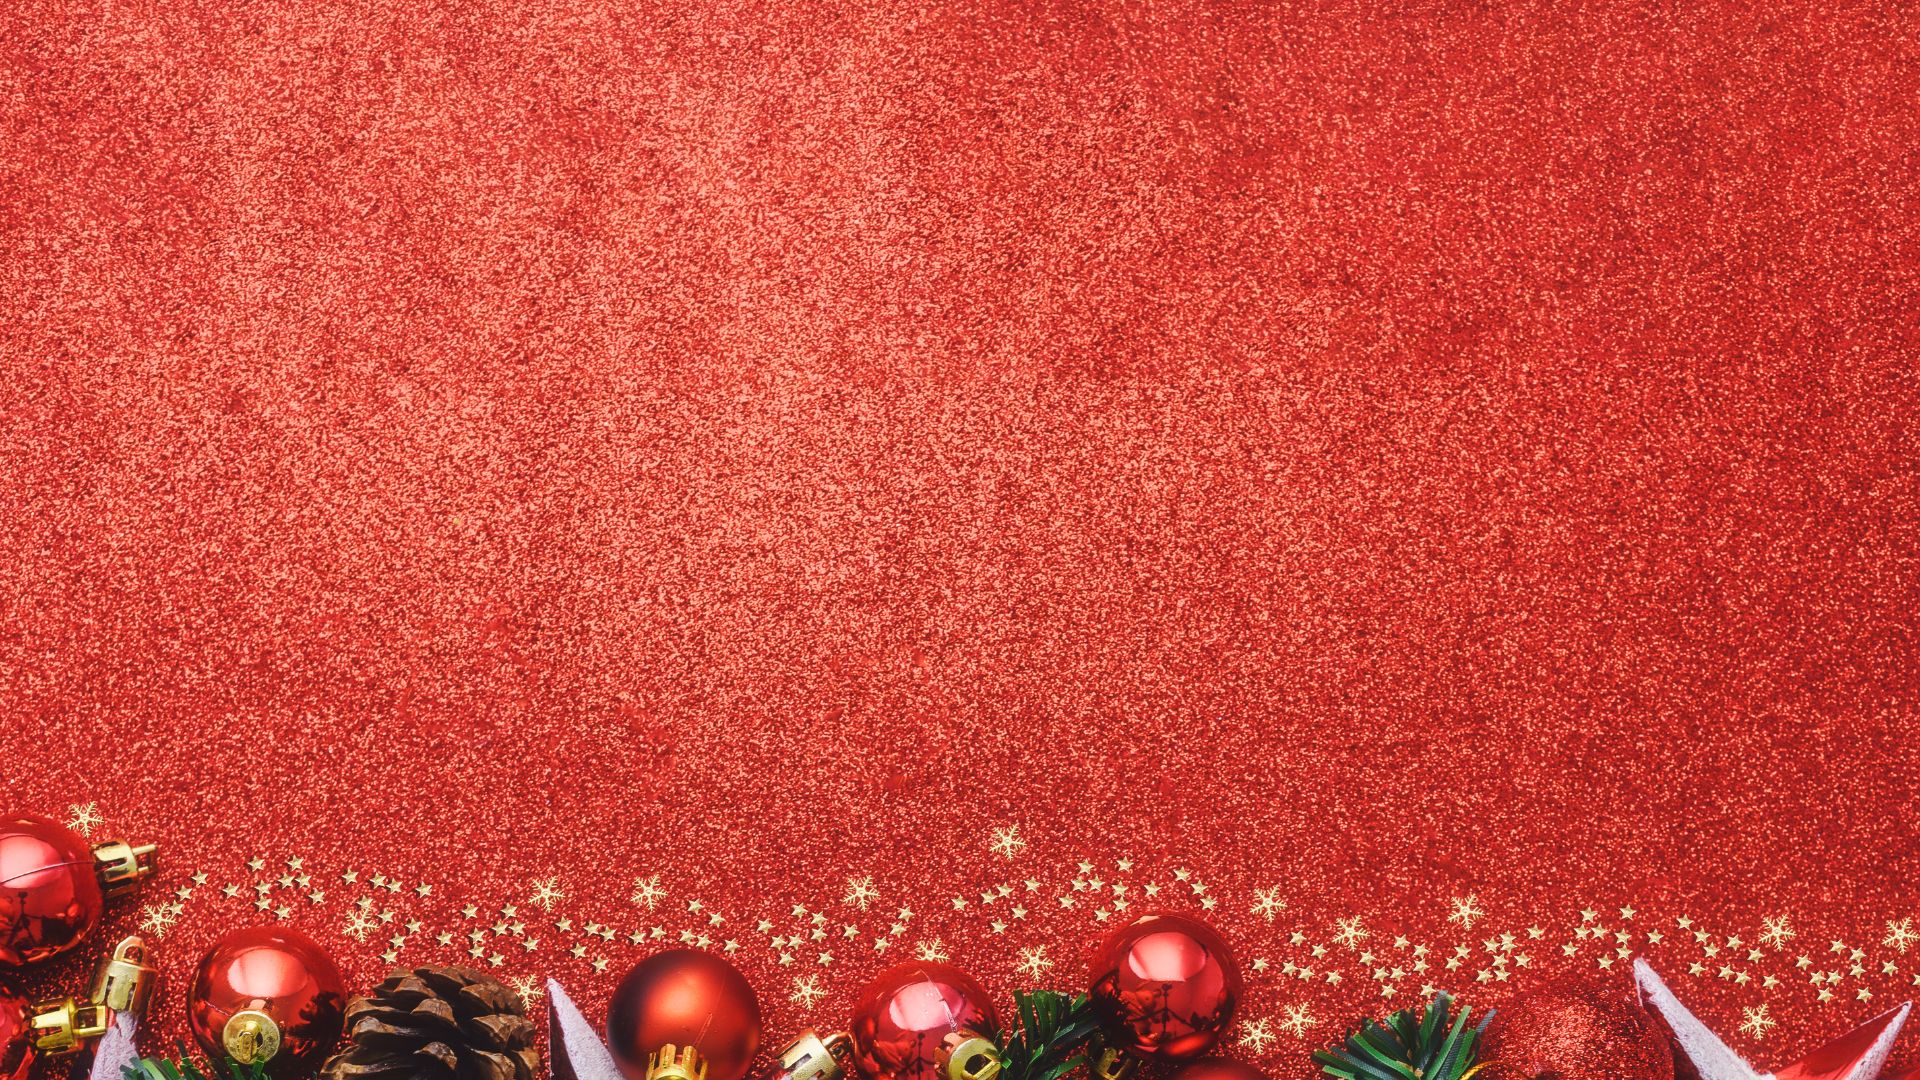 Imagem de fundo vermelho. No canto inferior da imagem, uma borda decarativa composta por elementos natalinos como bolas vermelha e pinha.